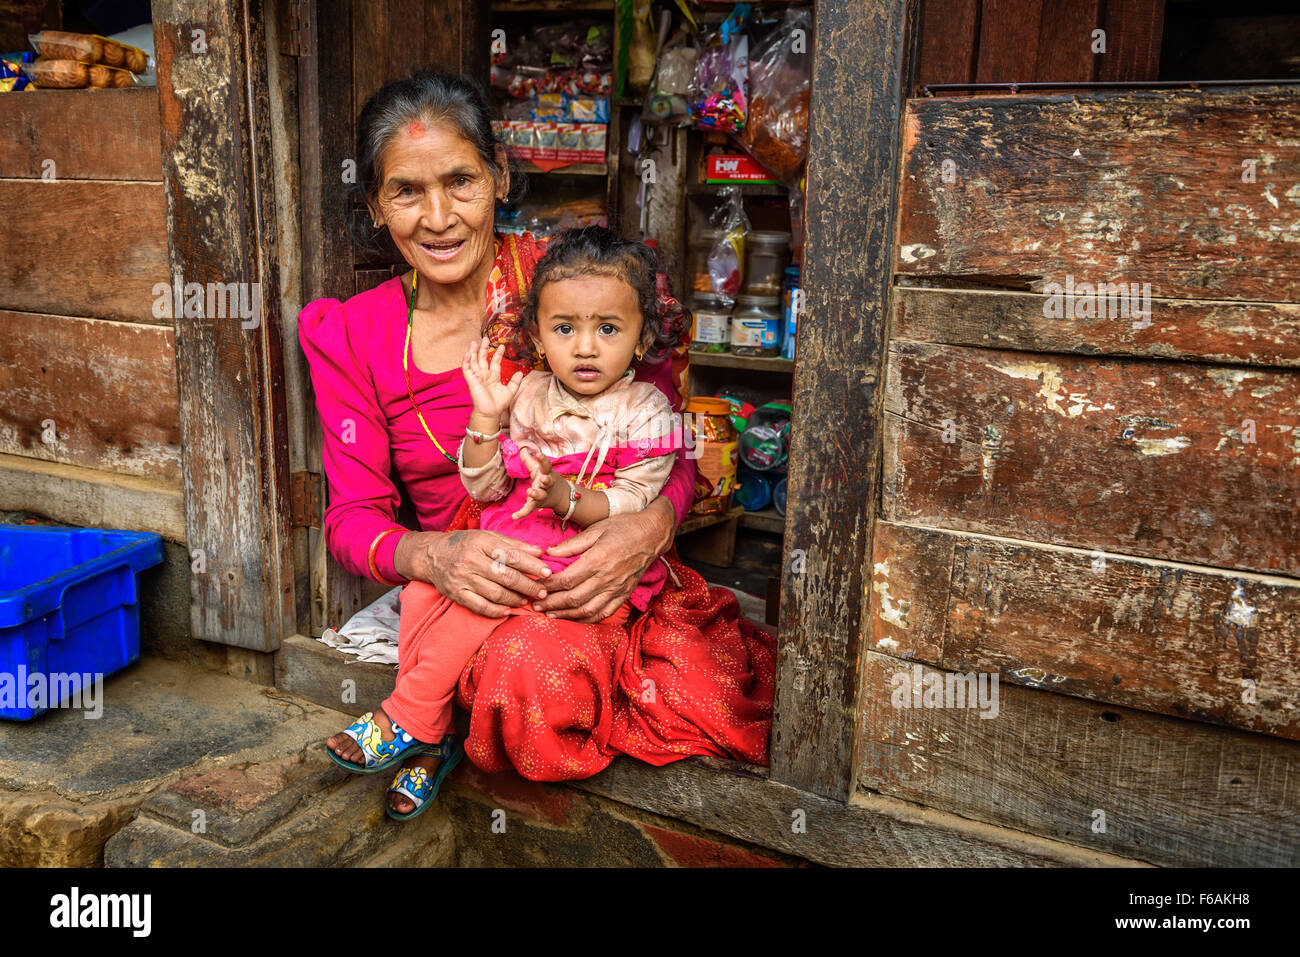 Vieille dame népalais avec un enfant vend des marchandises dans son magasin. Banque D'Images